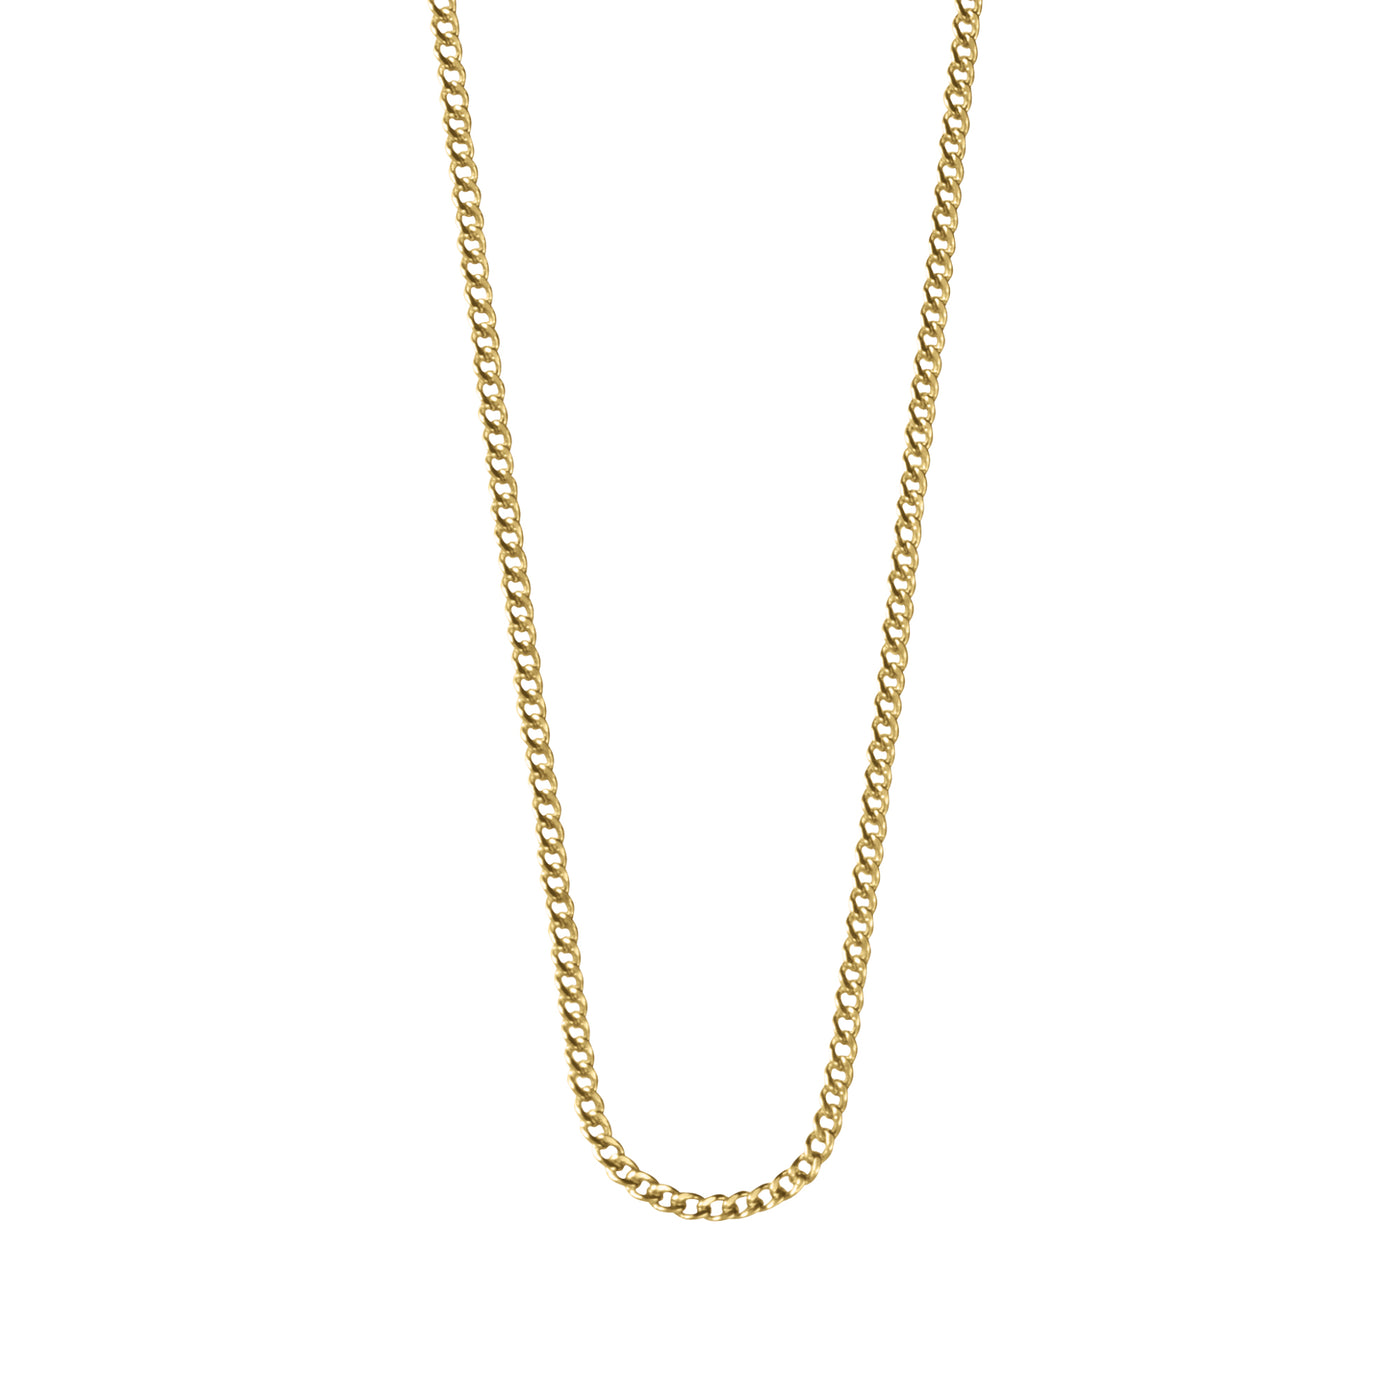 Kirstin Ash Bespoke Curb Chain (22-25") in Gold Vermeil